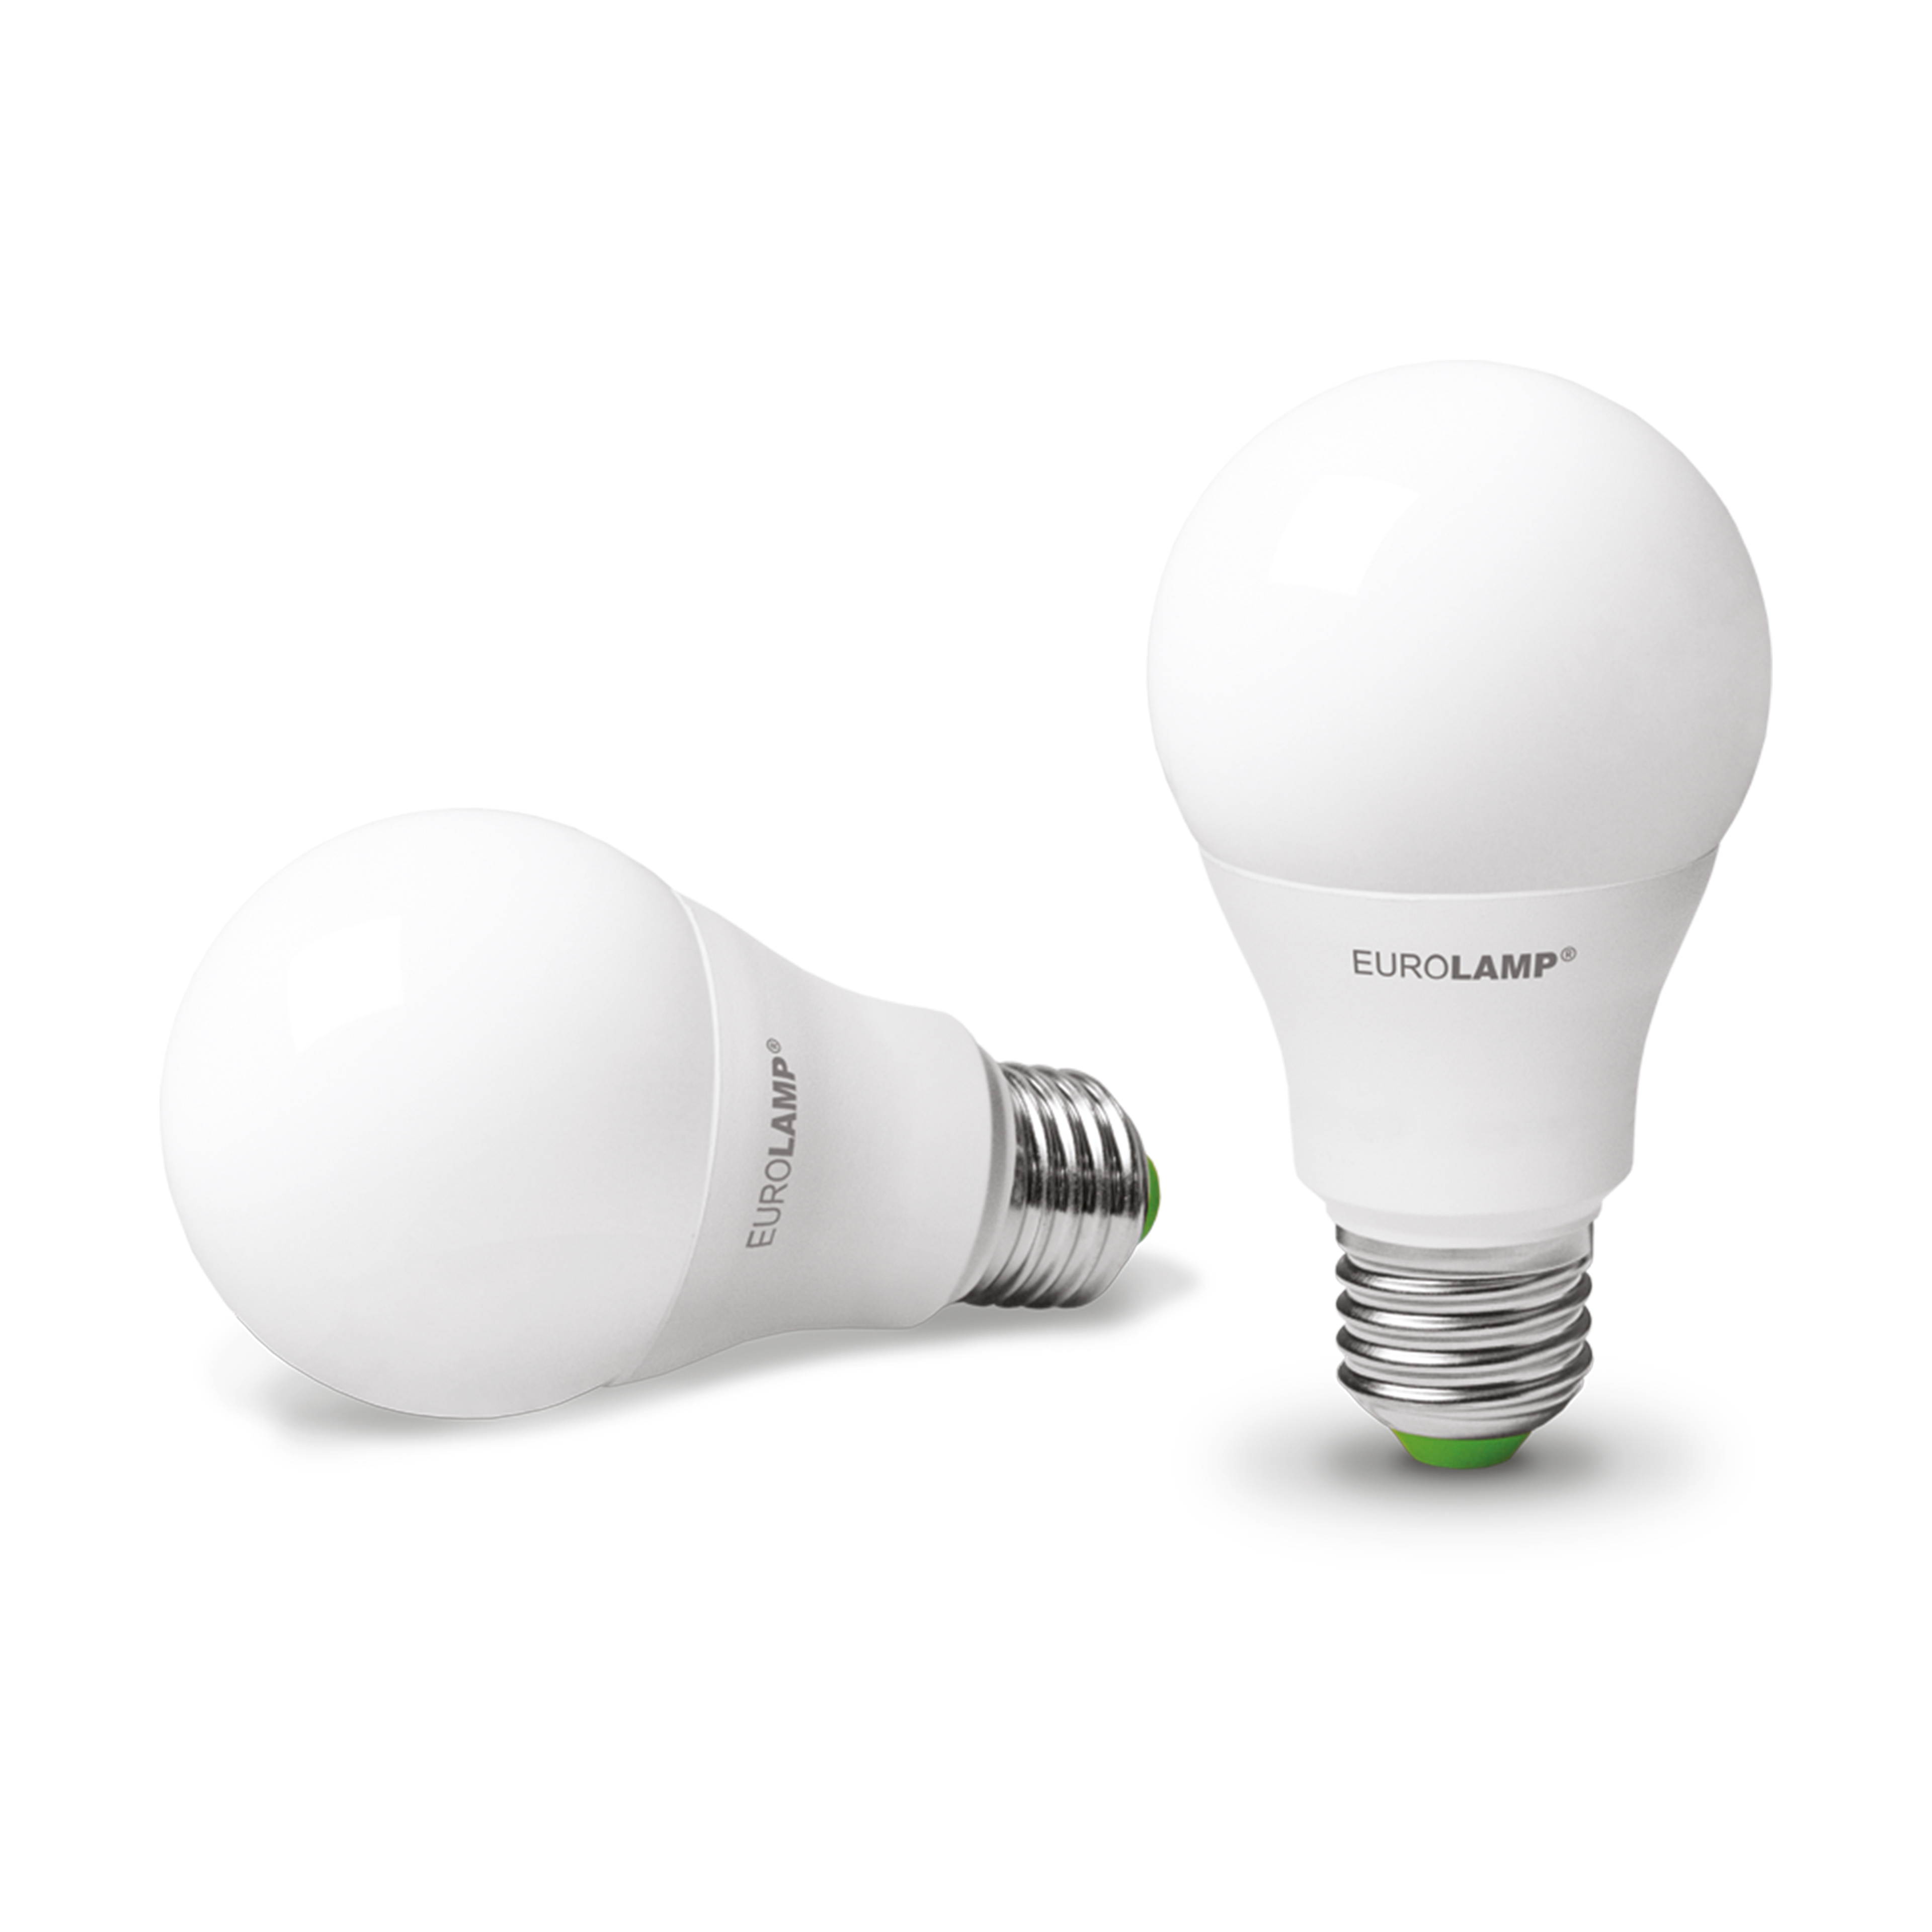 MLP-LED-A60-10272(E) 2 LED Lampen 10W,E27, 3000K